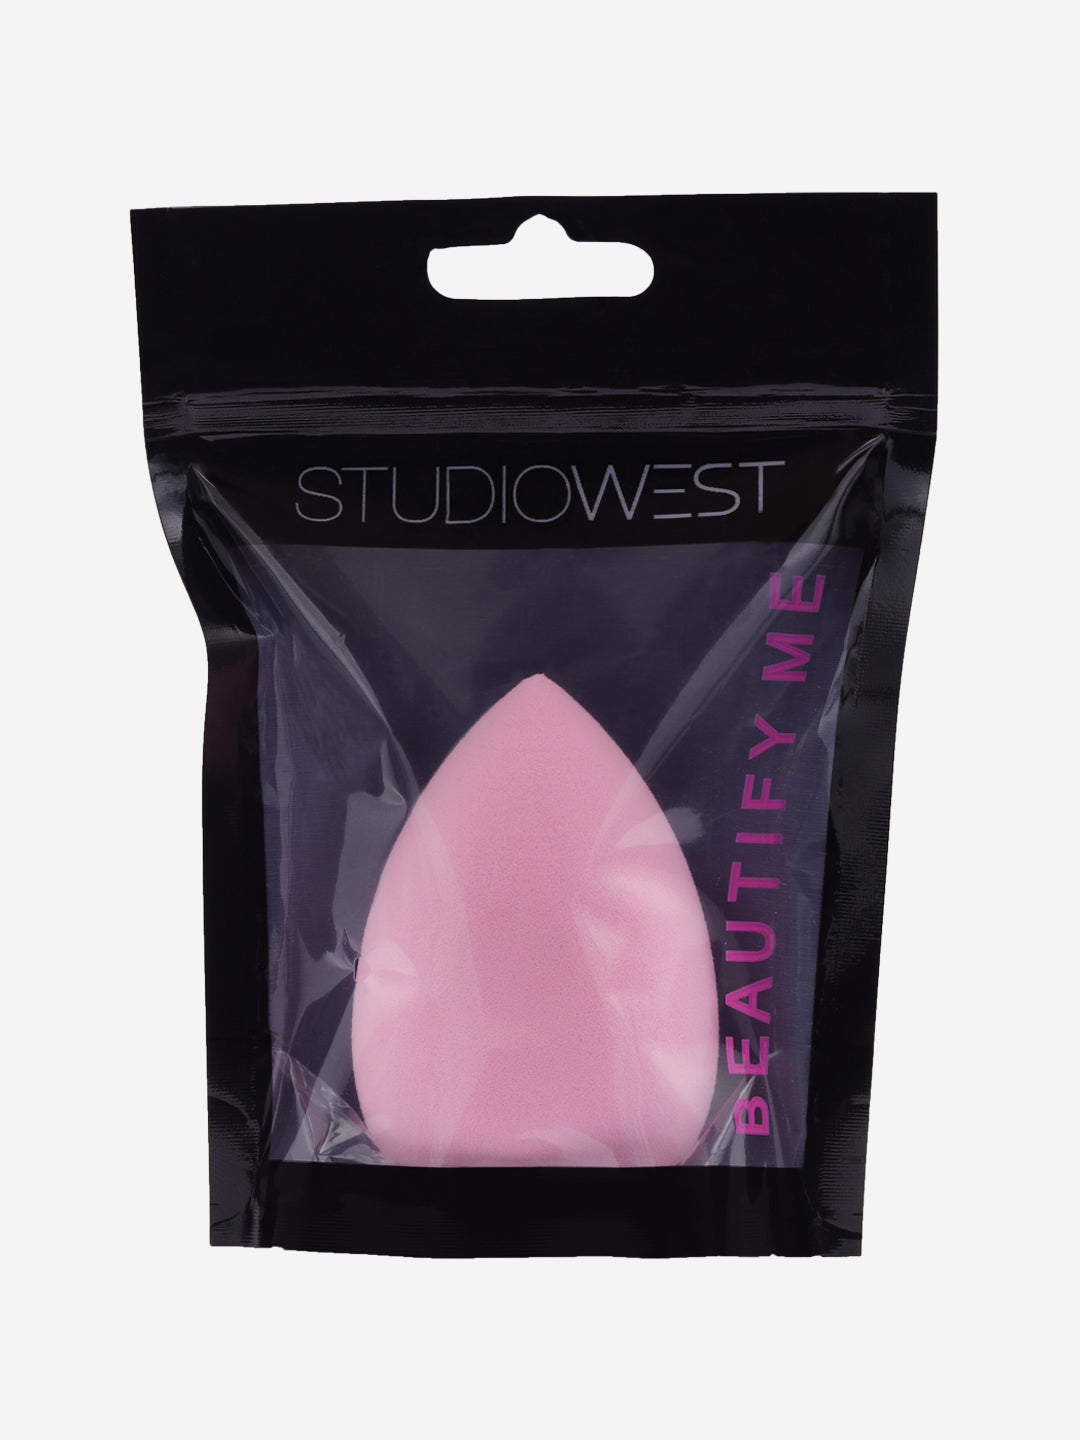 Studiowest Drop Beauty Blender in Light Pink